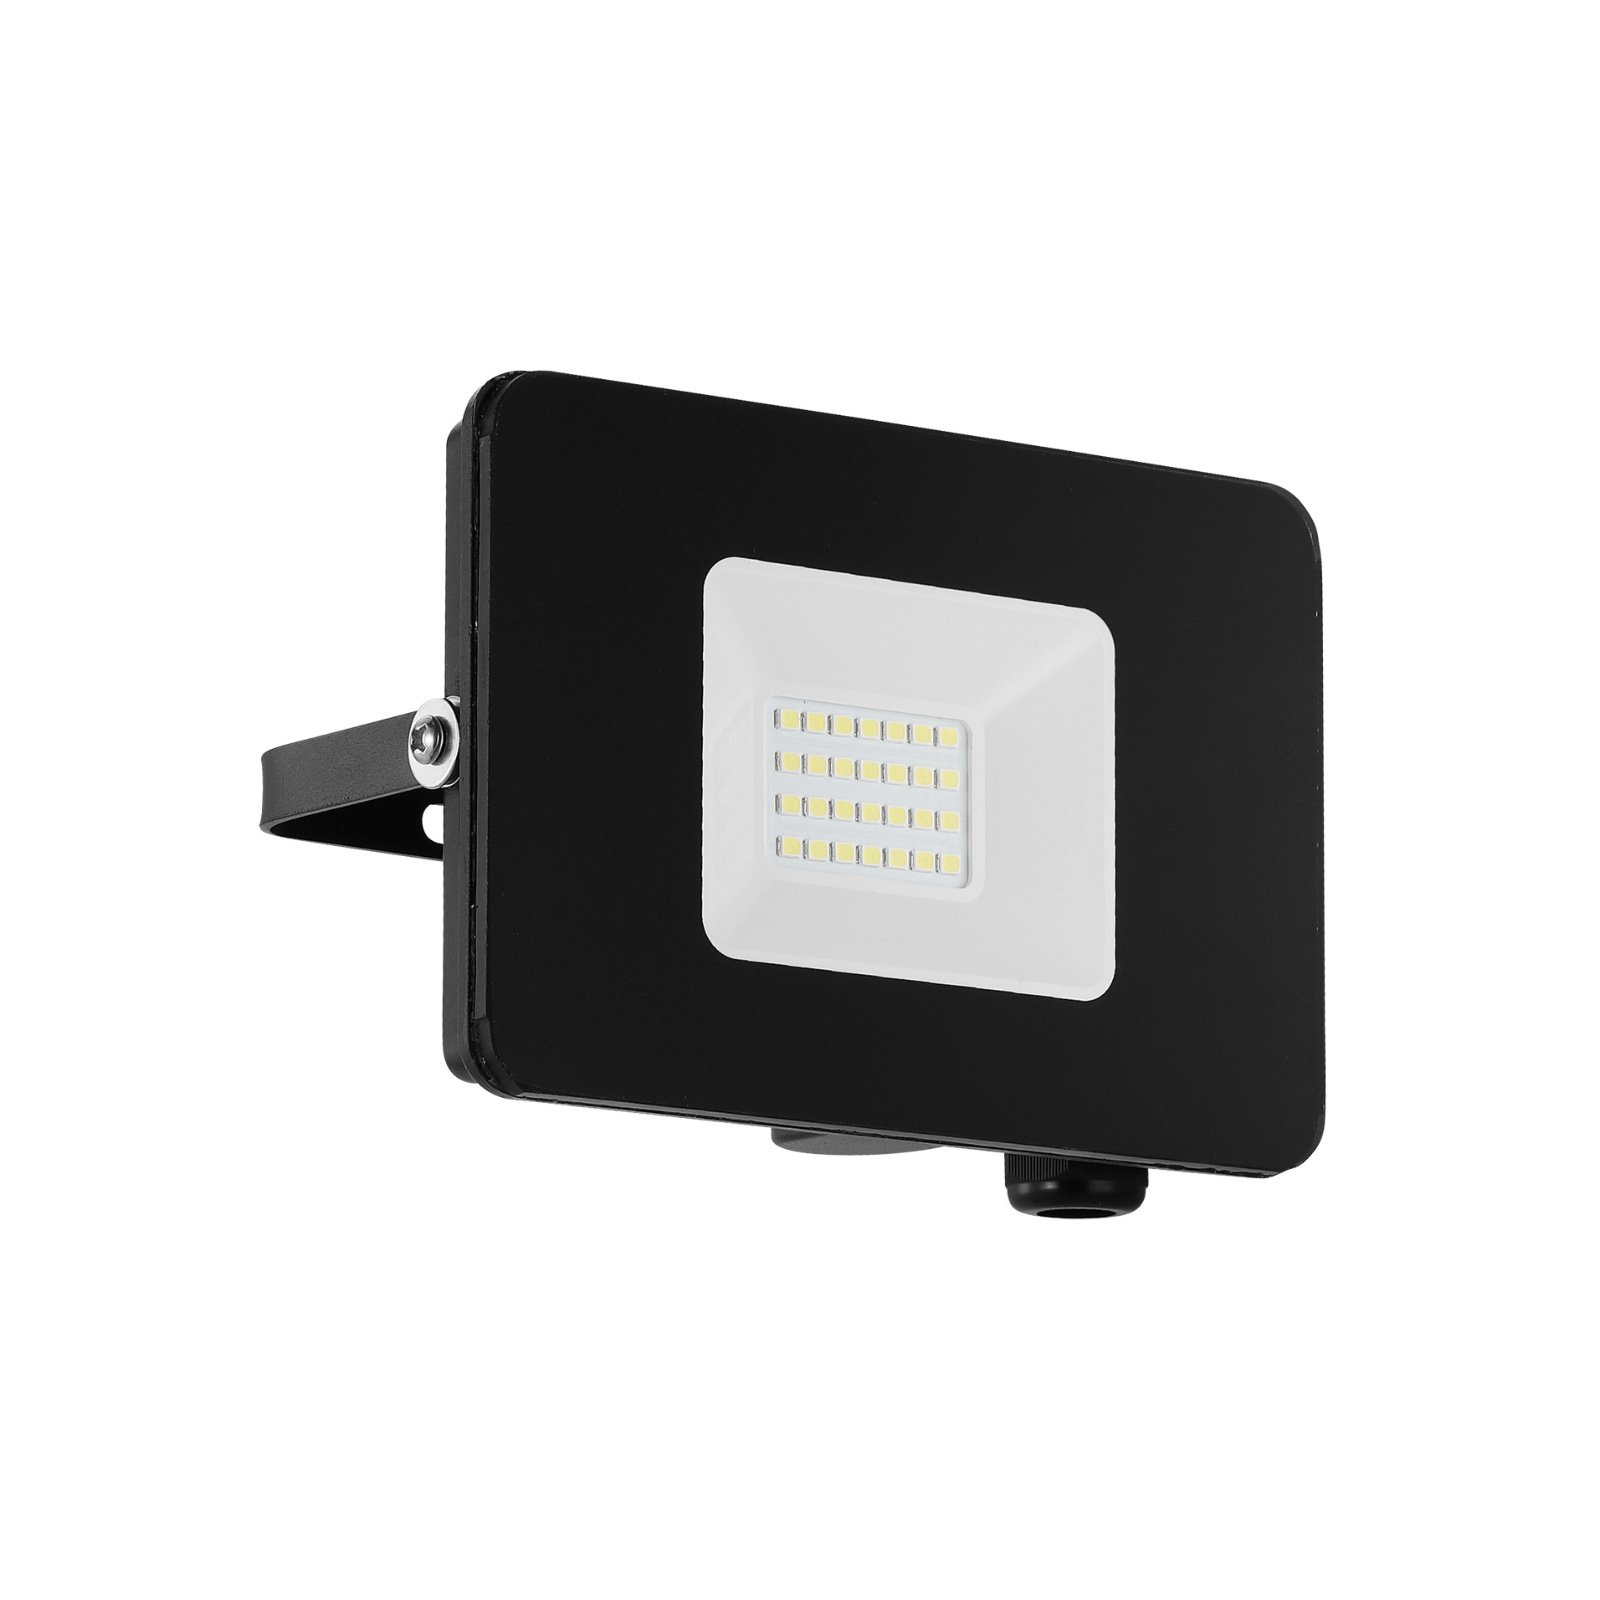 Utendørs LED-spot Faedo 3 i svart, 20 W